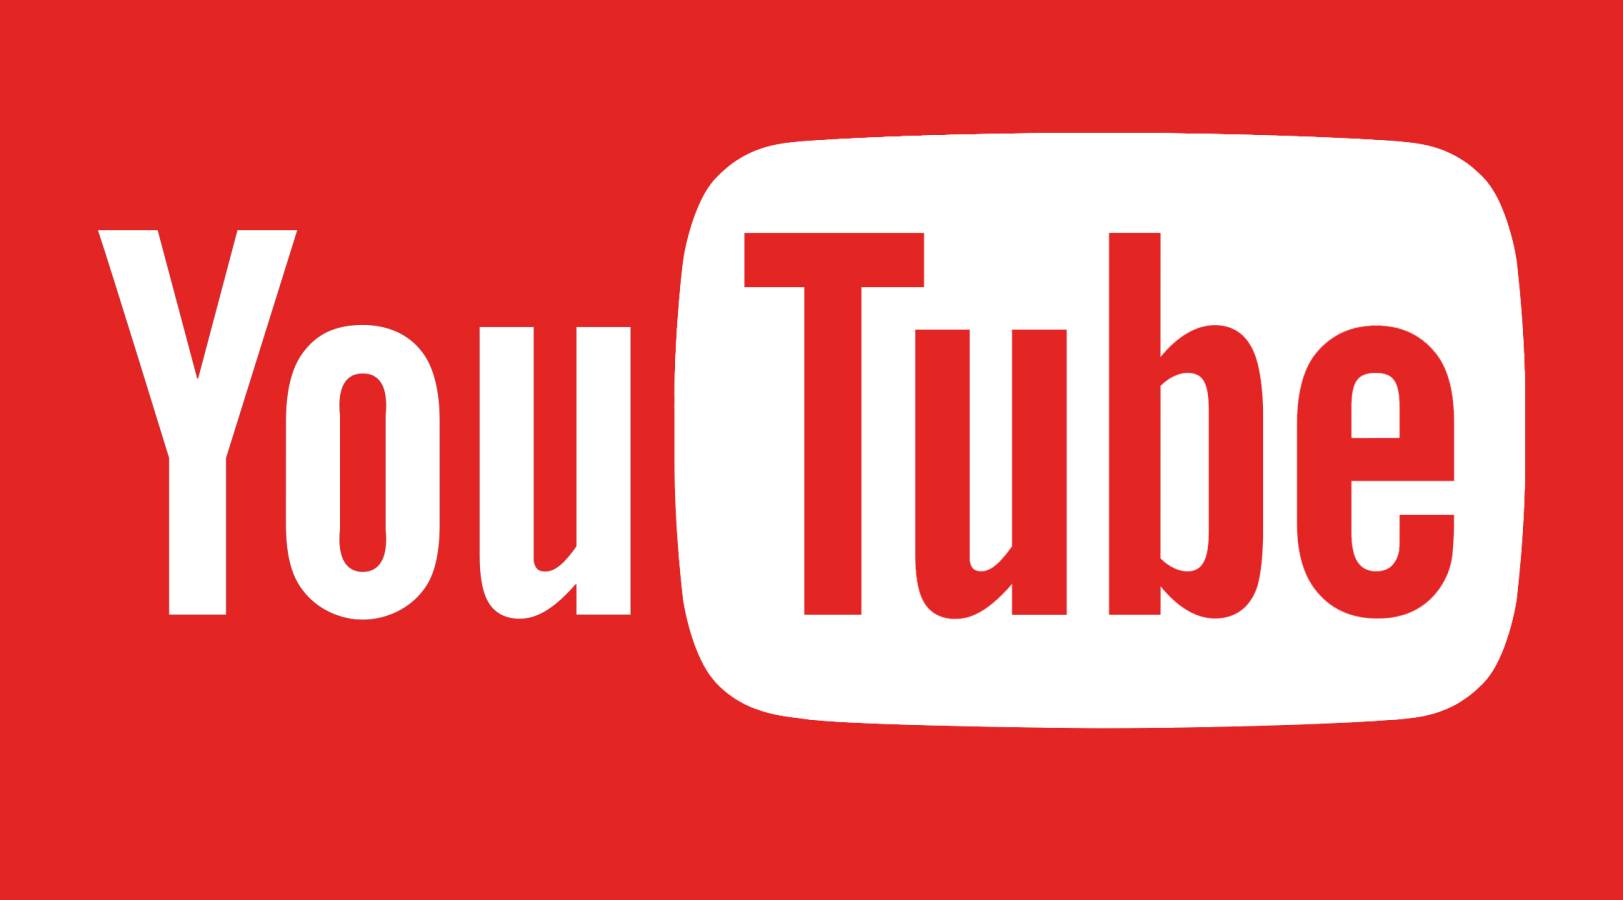 Se lanzó la actualización de YouTube, ¿cuáles son los cambios que nos trae?